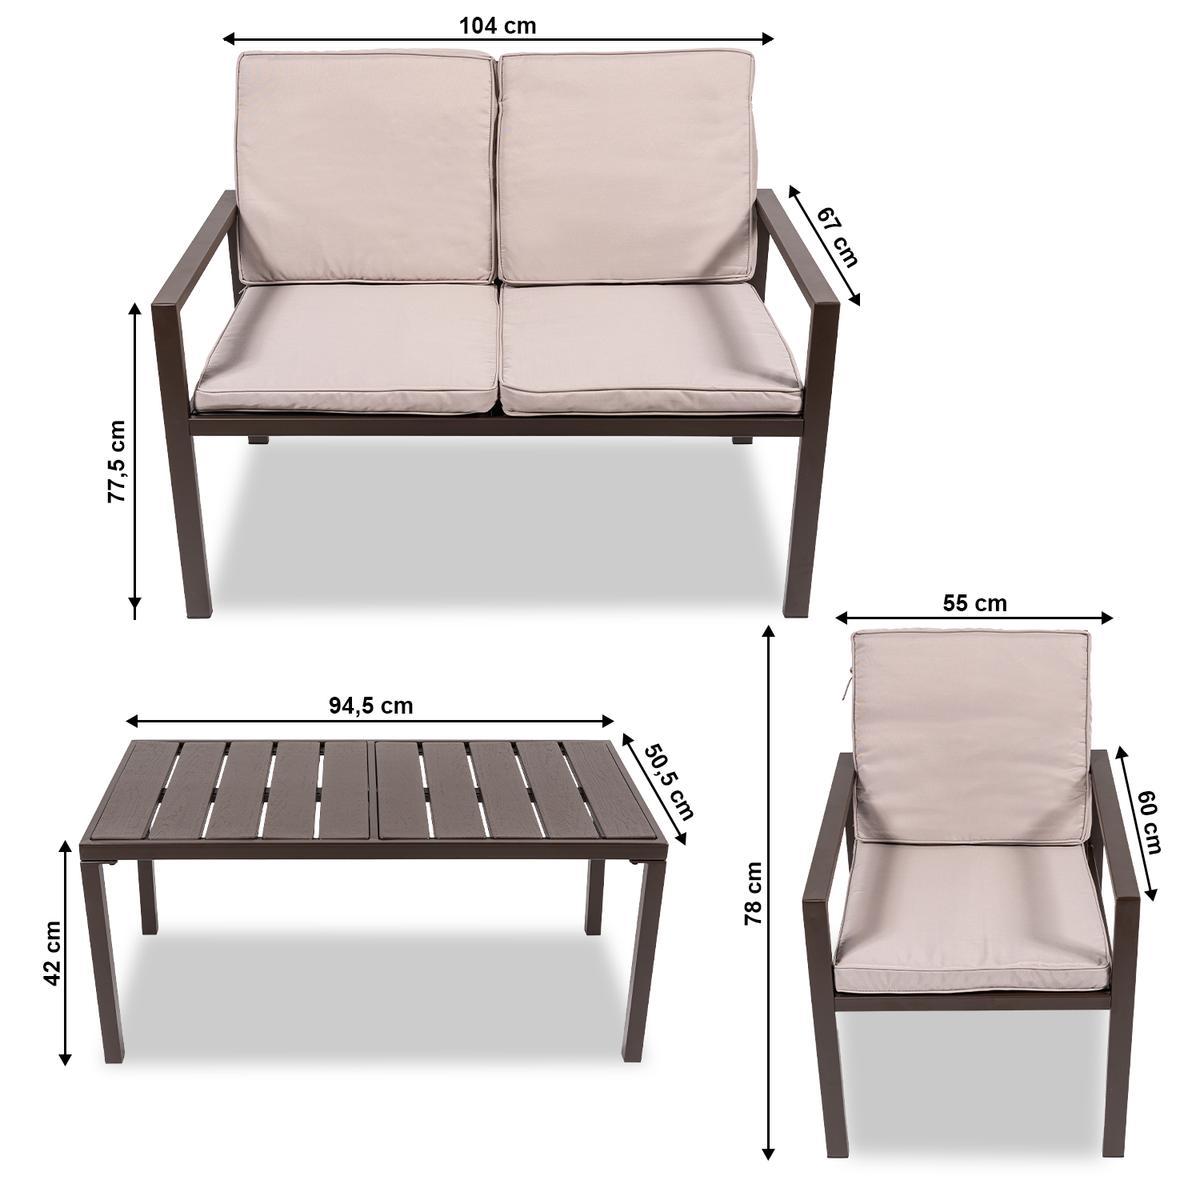 Zestaw mebli ogrodowych kanapa stół krzesła ogrodowe Heckermann® AC-WS008-1 nr. 9